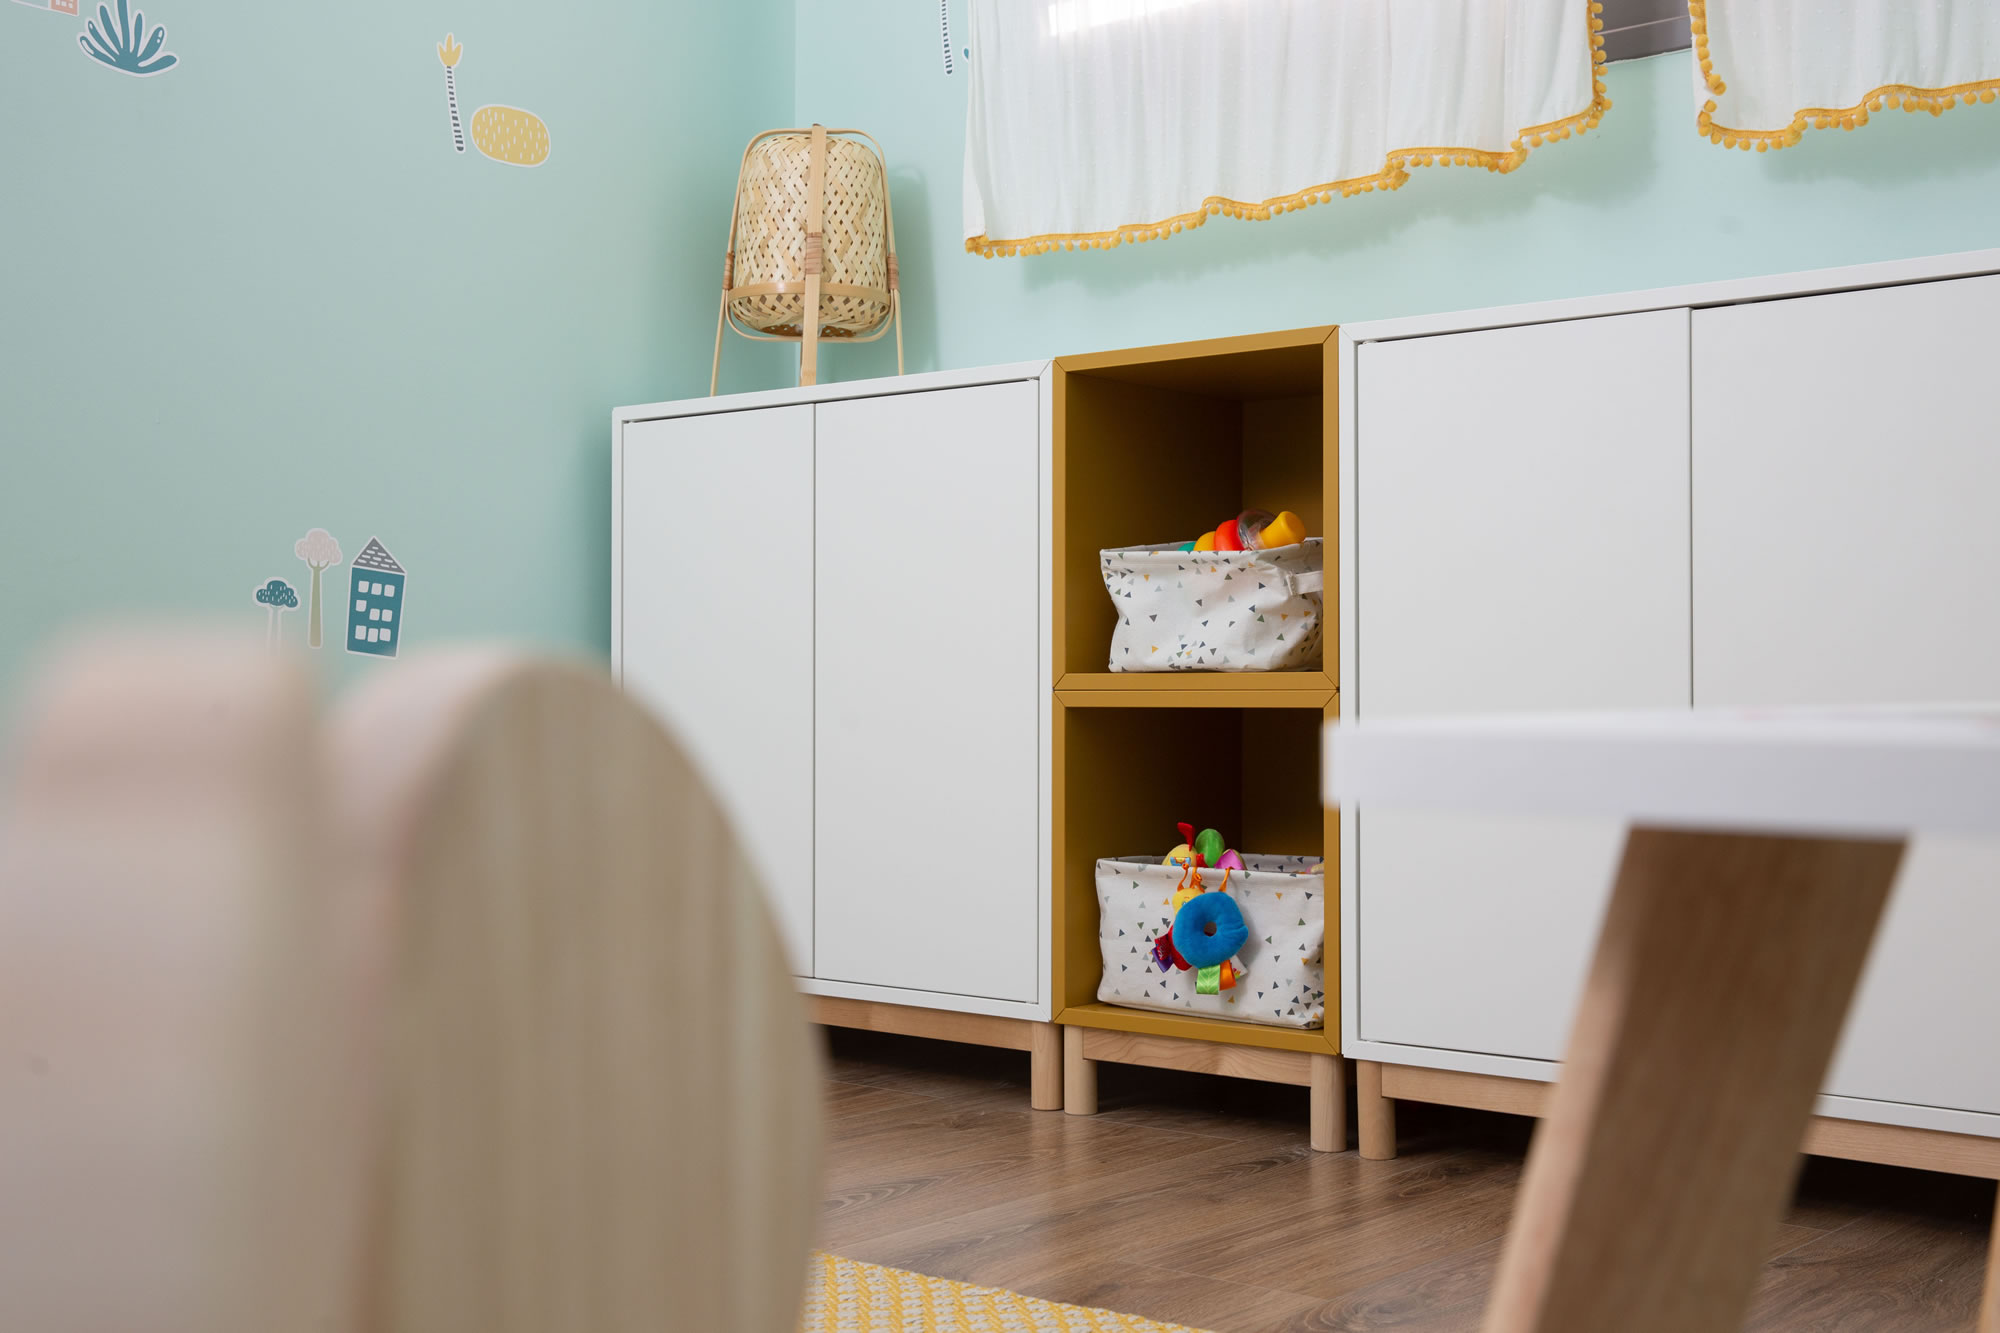 ארוניות מאיקאה בגווני לבן וצהוב ורגלי עץ משתלבות בדיוק עם הוילון, הפרקט והשטיח בחדר המשחקים.